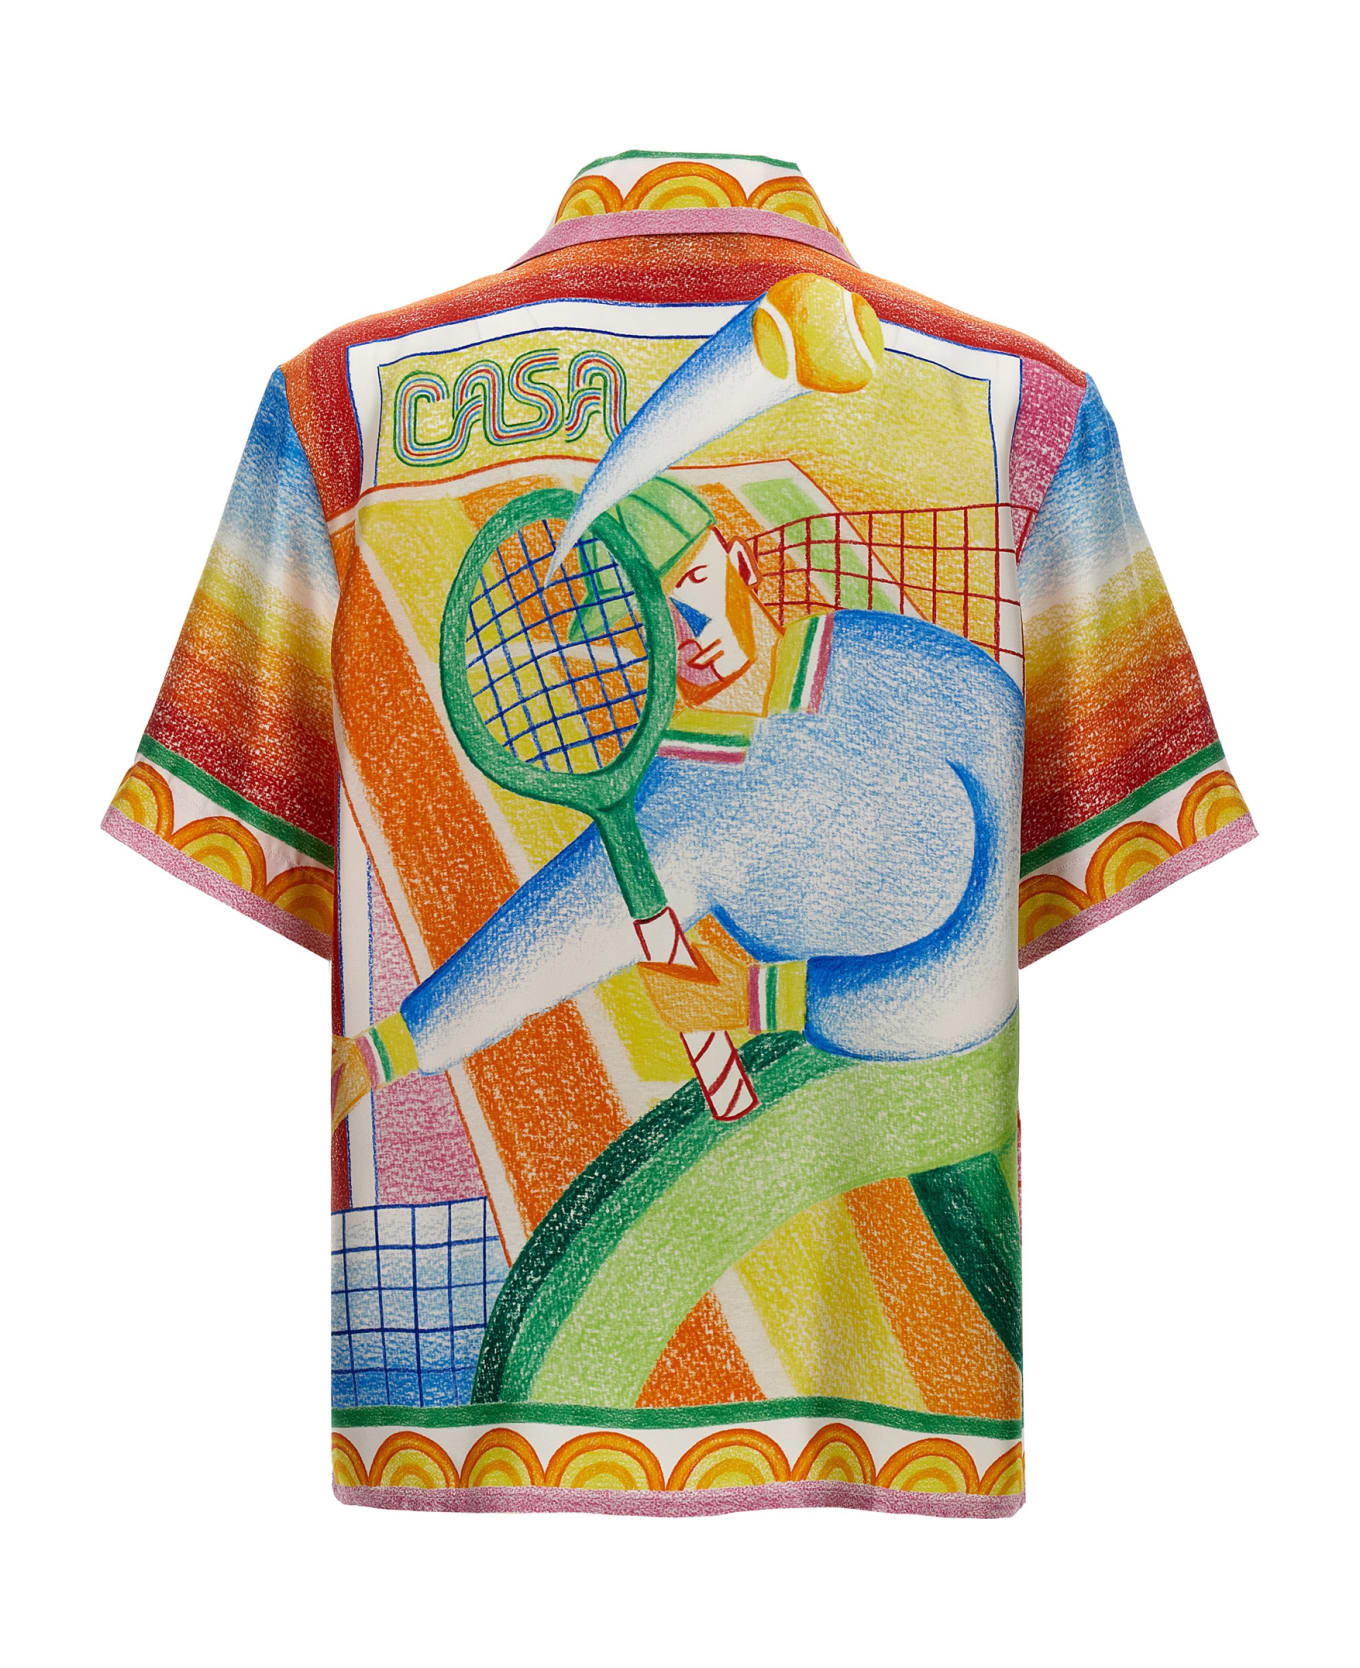 Casablanca 'crayon Tennis Player' Shirt - Multicolor